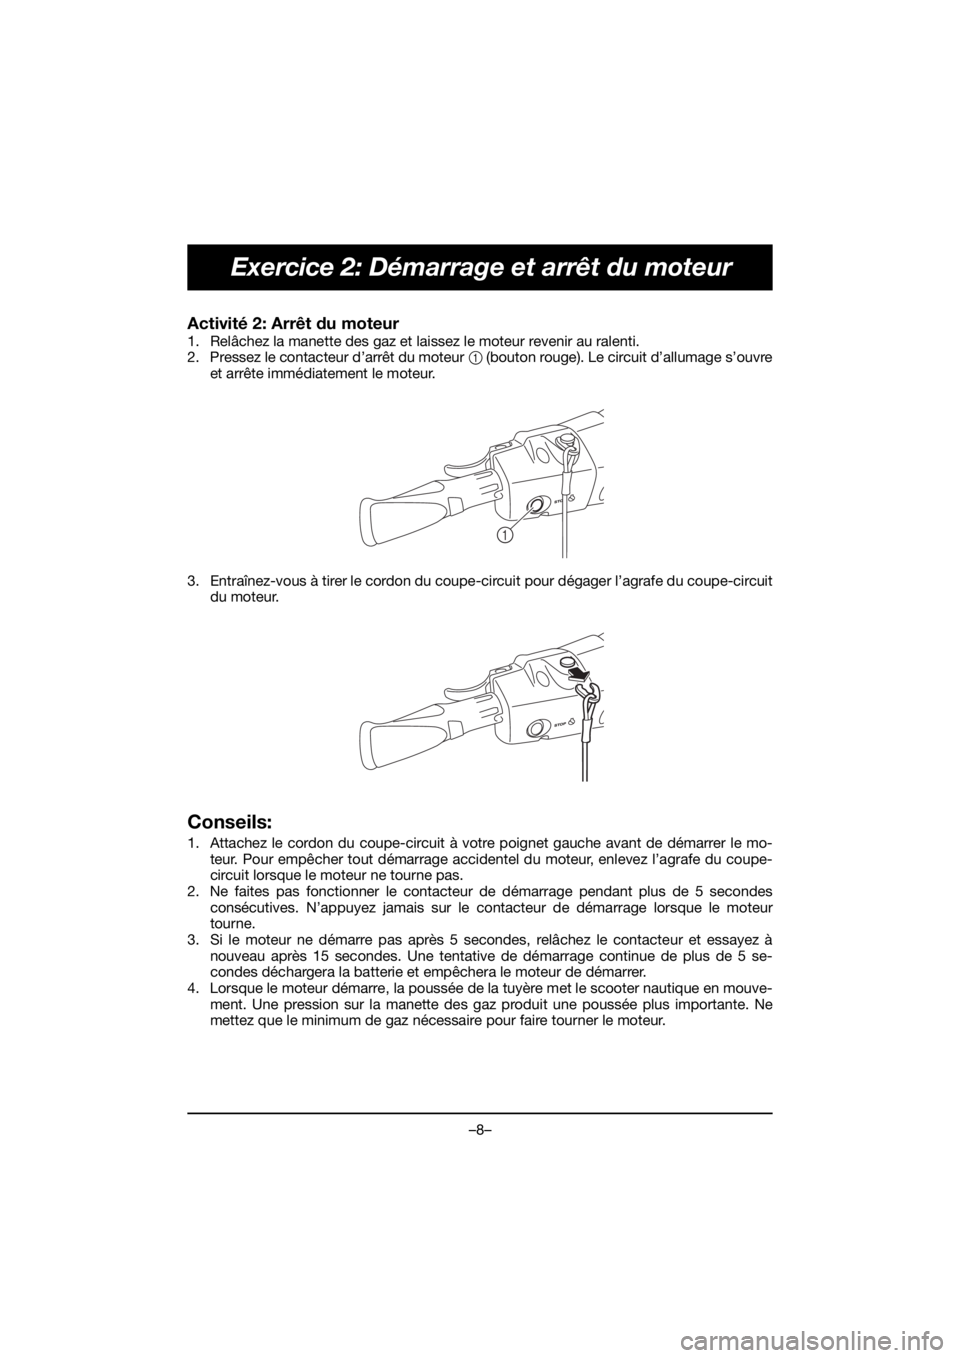 YAMAHA FJR1300 2019  Notices Demploi (in French) –8–
Exercice 2: Démarrage et arrêt du moteur
Activité 2: Arrêt du moteur 
1. Relâchez la manette des gaz et laissez le moteur revenir au ralenti. 
2. Pressez le contacteur d’arrêt du moteu